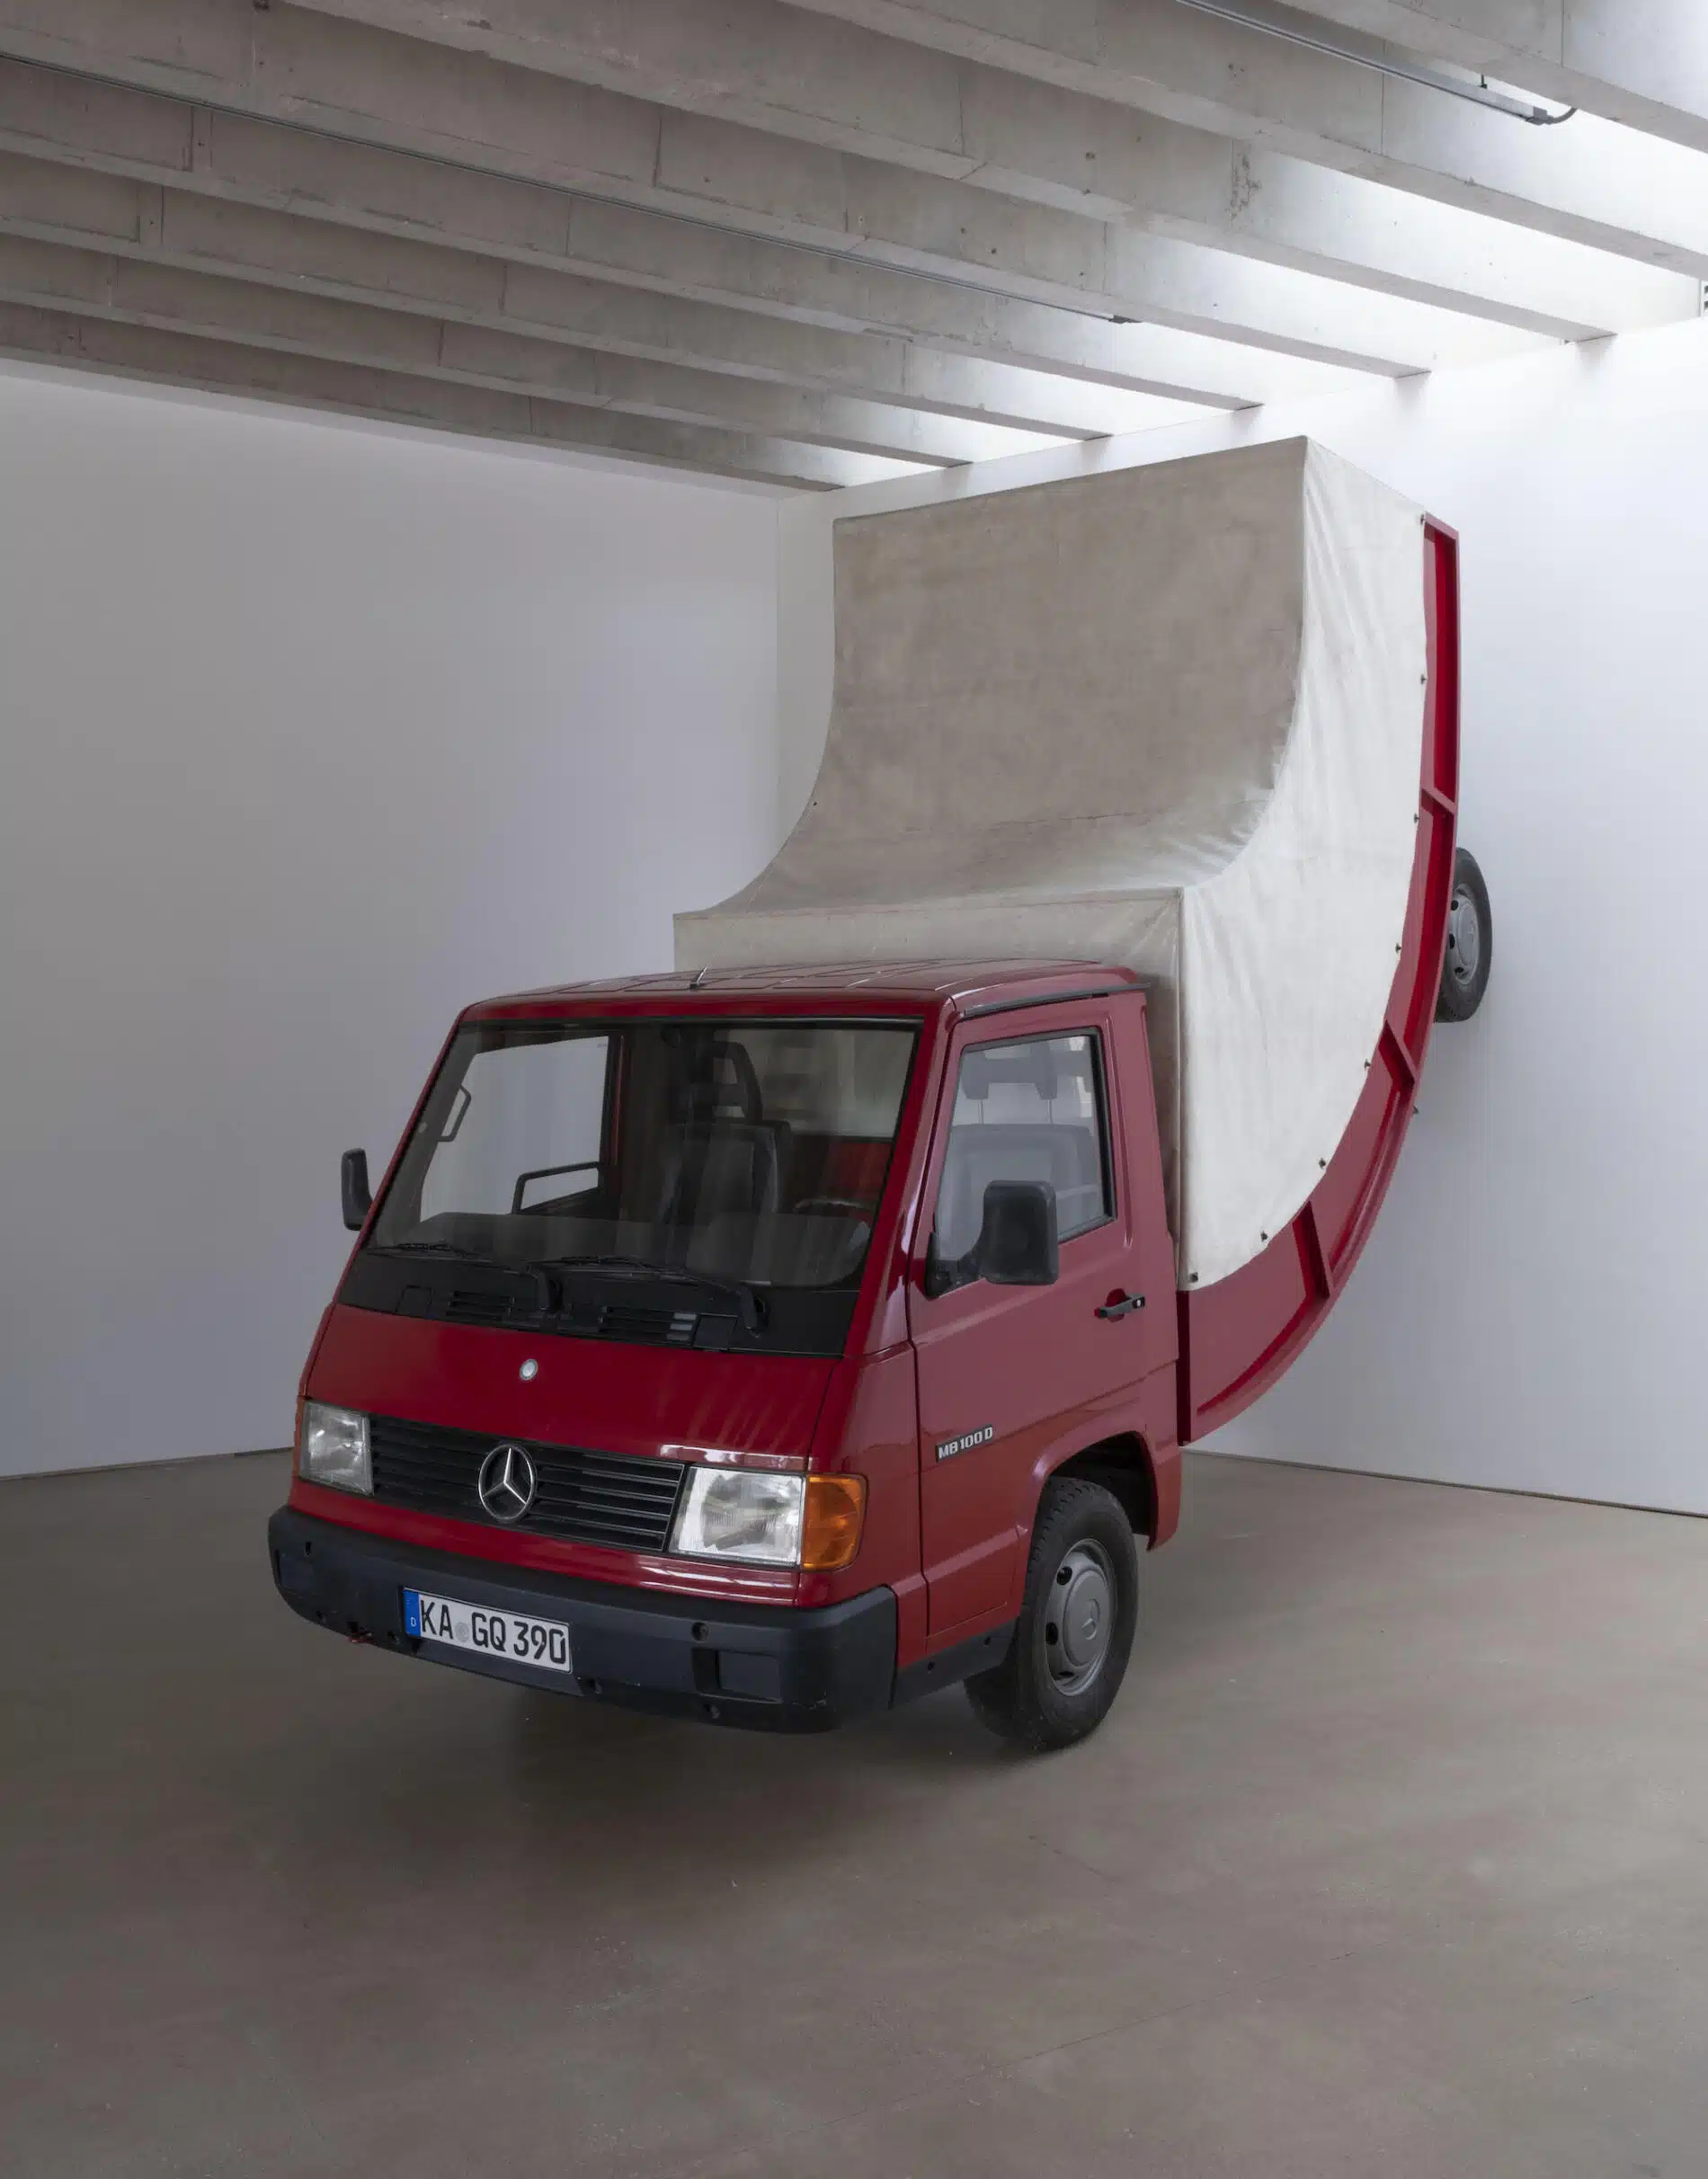 Erwin Wurm esculturas truck